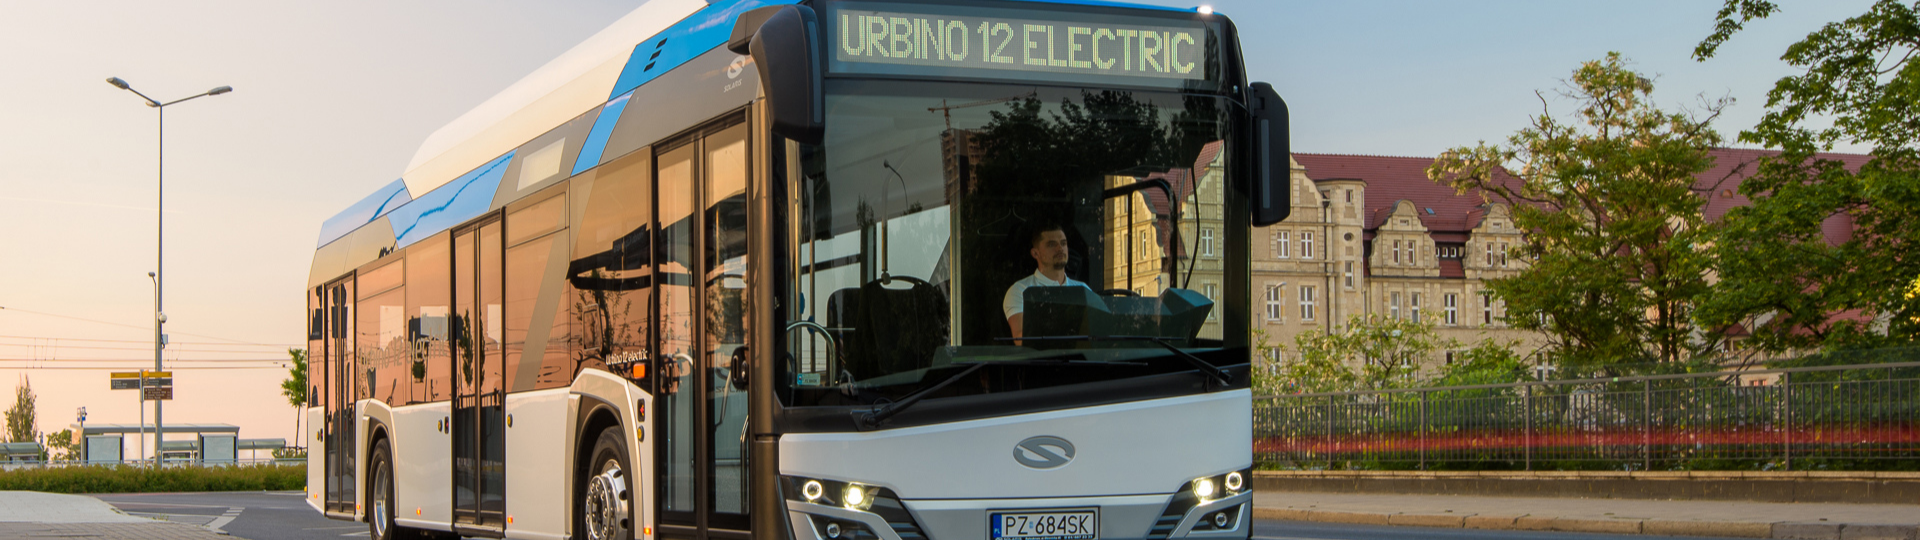 Zakopane verstärkt seinen umweltfreundlichen ÖPNV durch emissionsfreie Urbino 12 electric